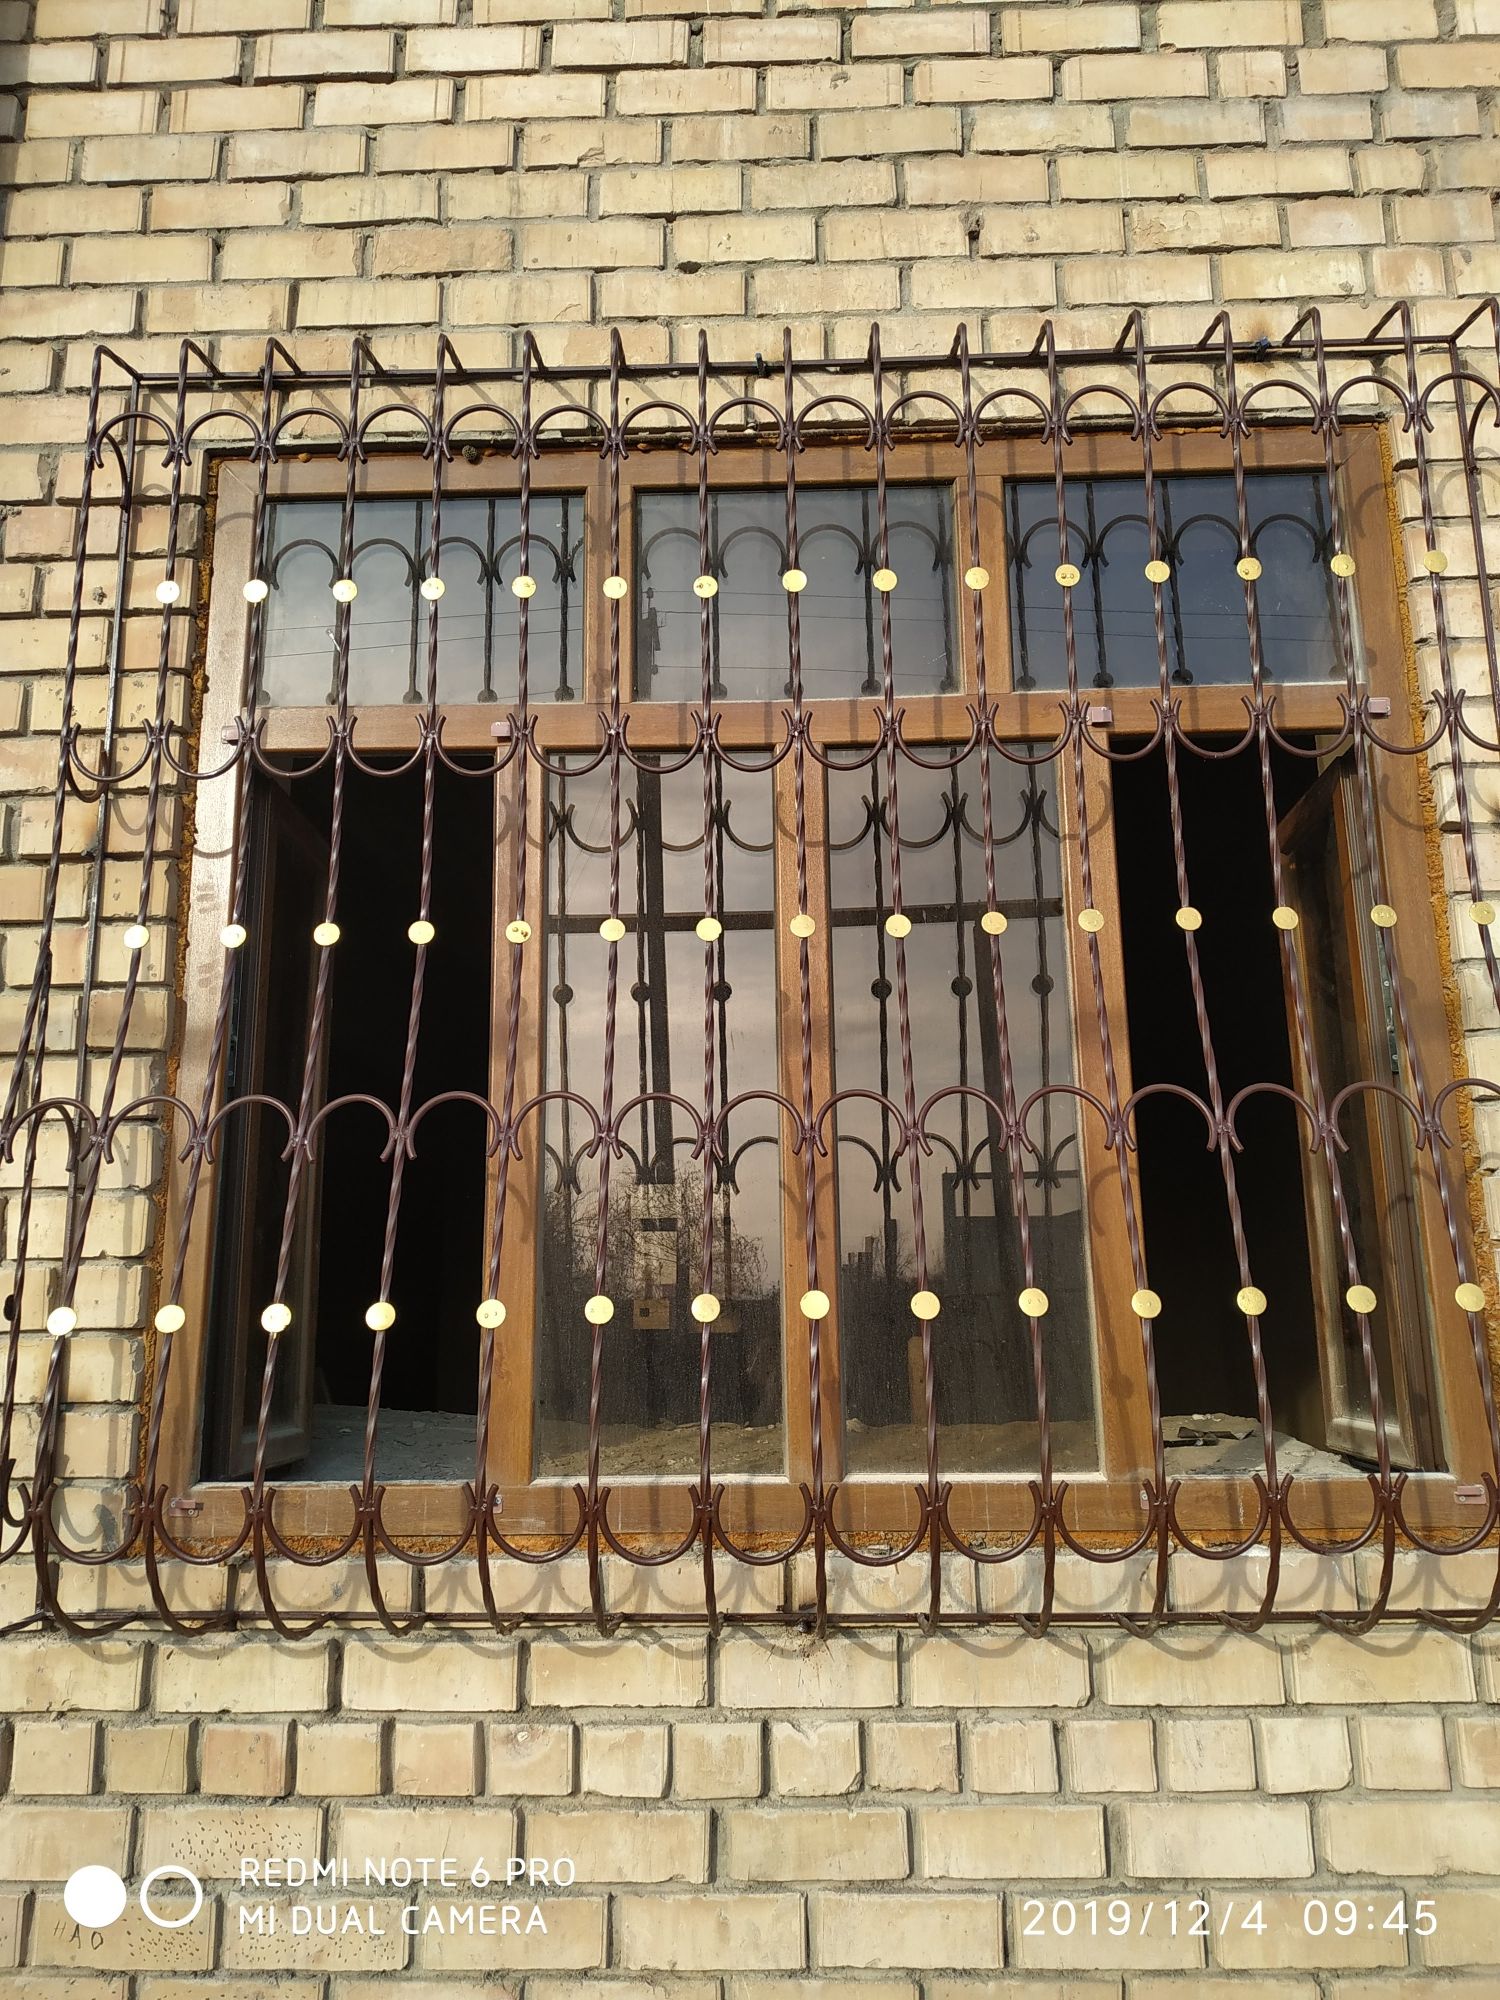 Изготовим решётки металлические двери новесы ограды